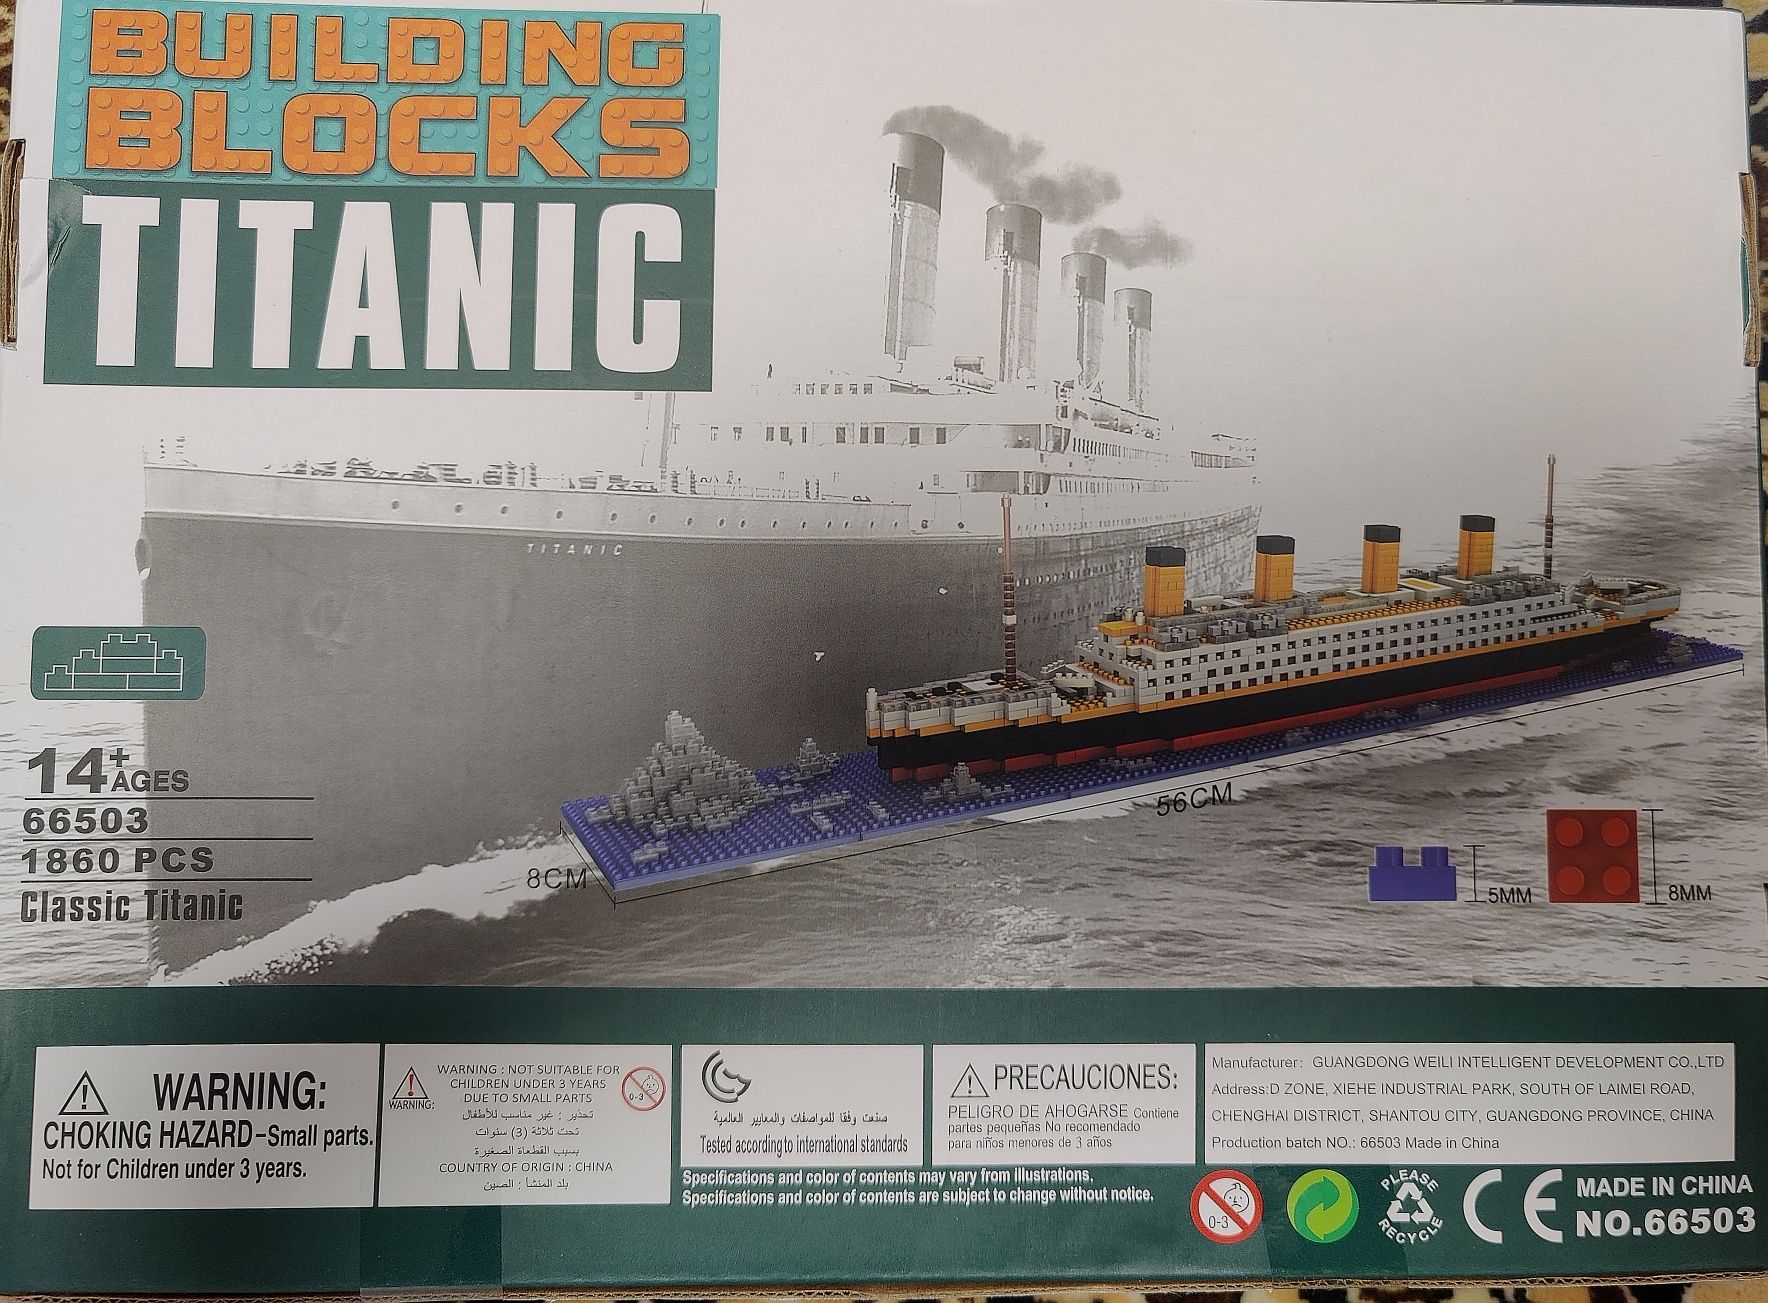 Титанік-конструктор для поціновувачів історії